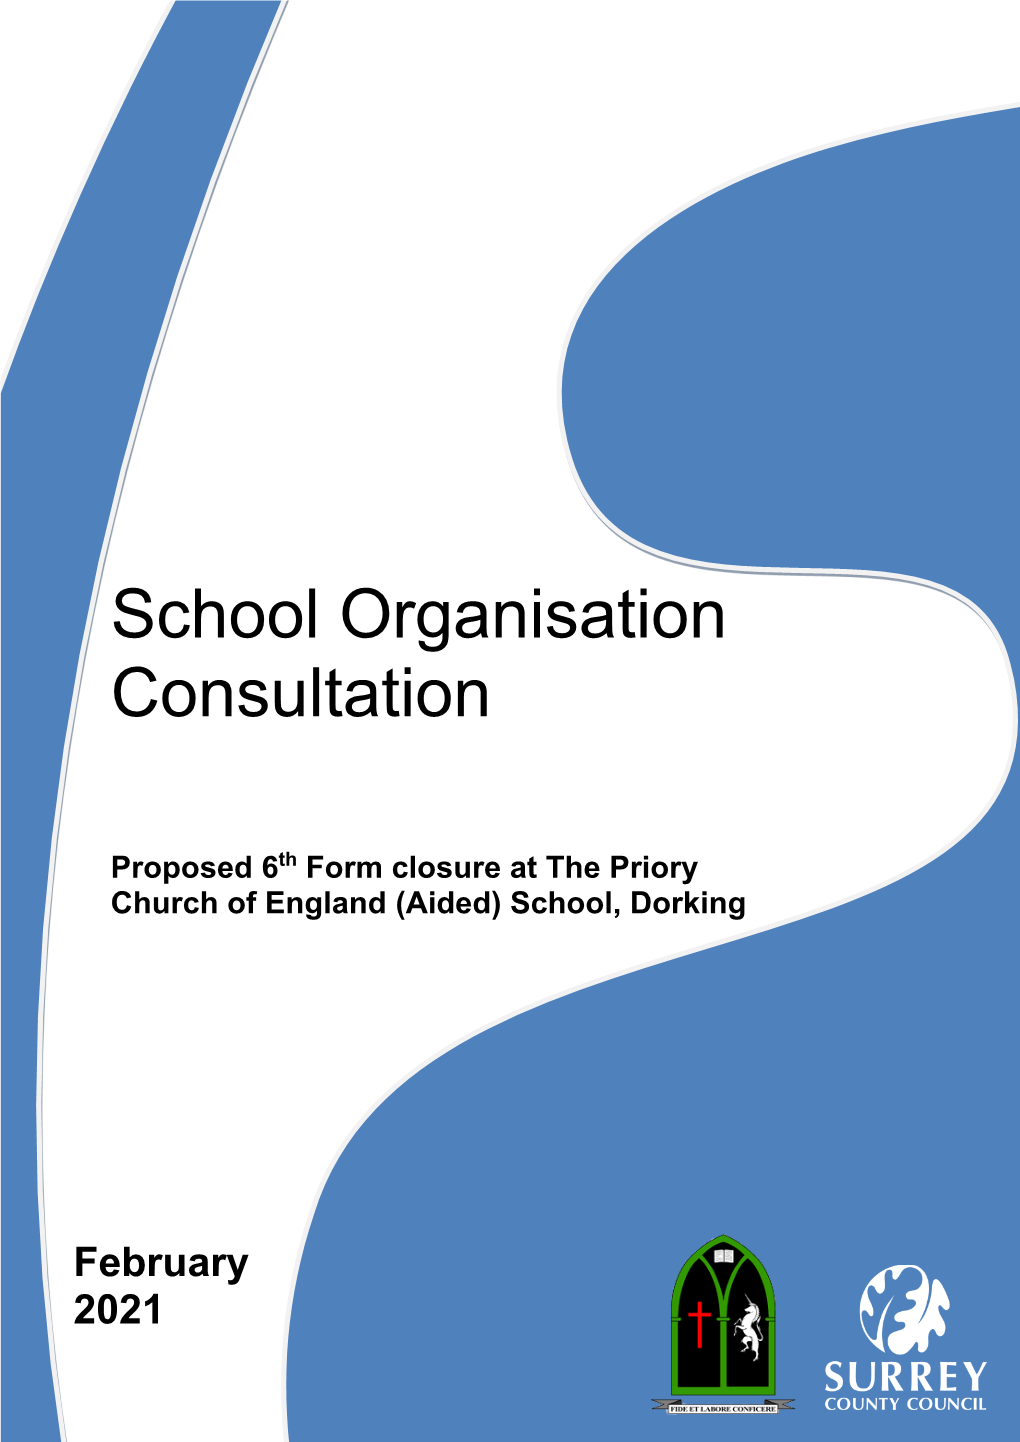 School Organisation Consultation